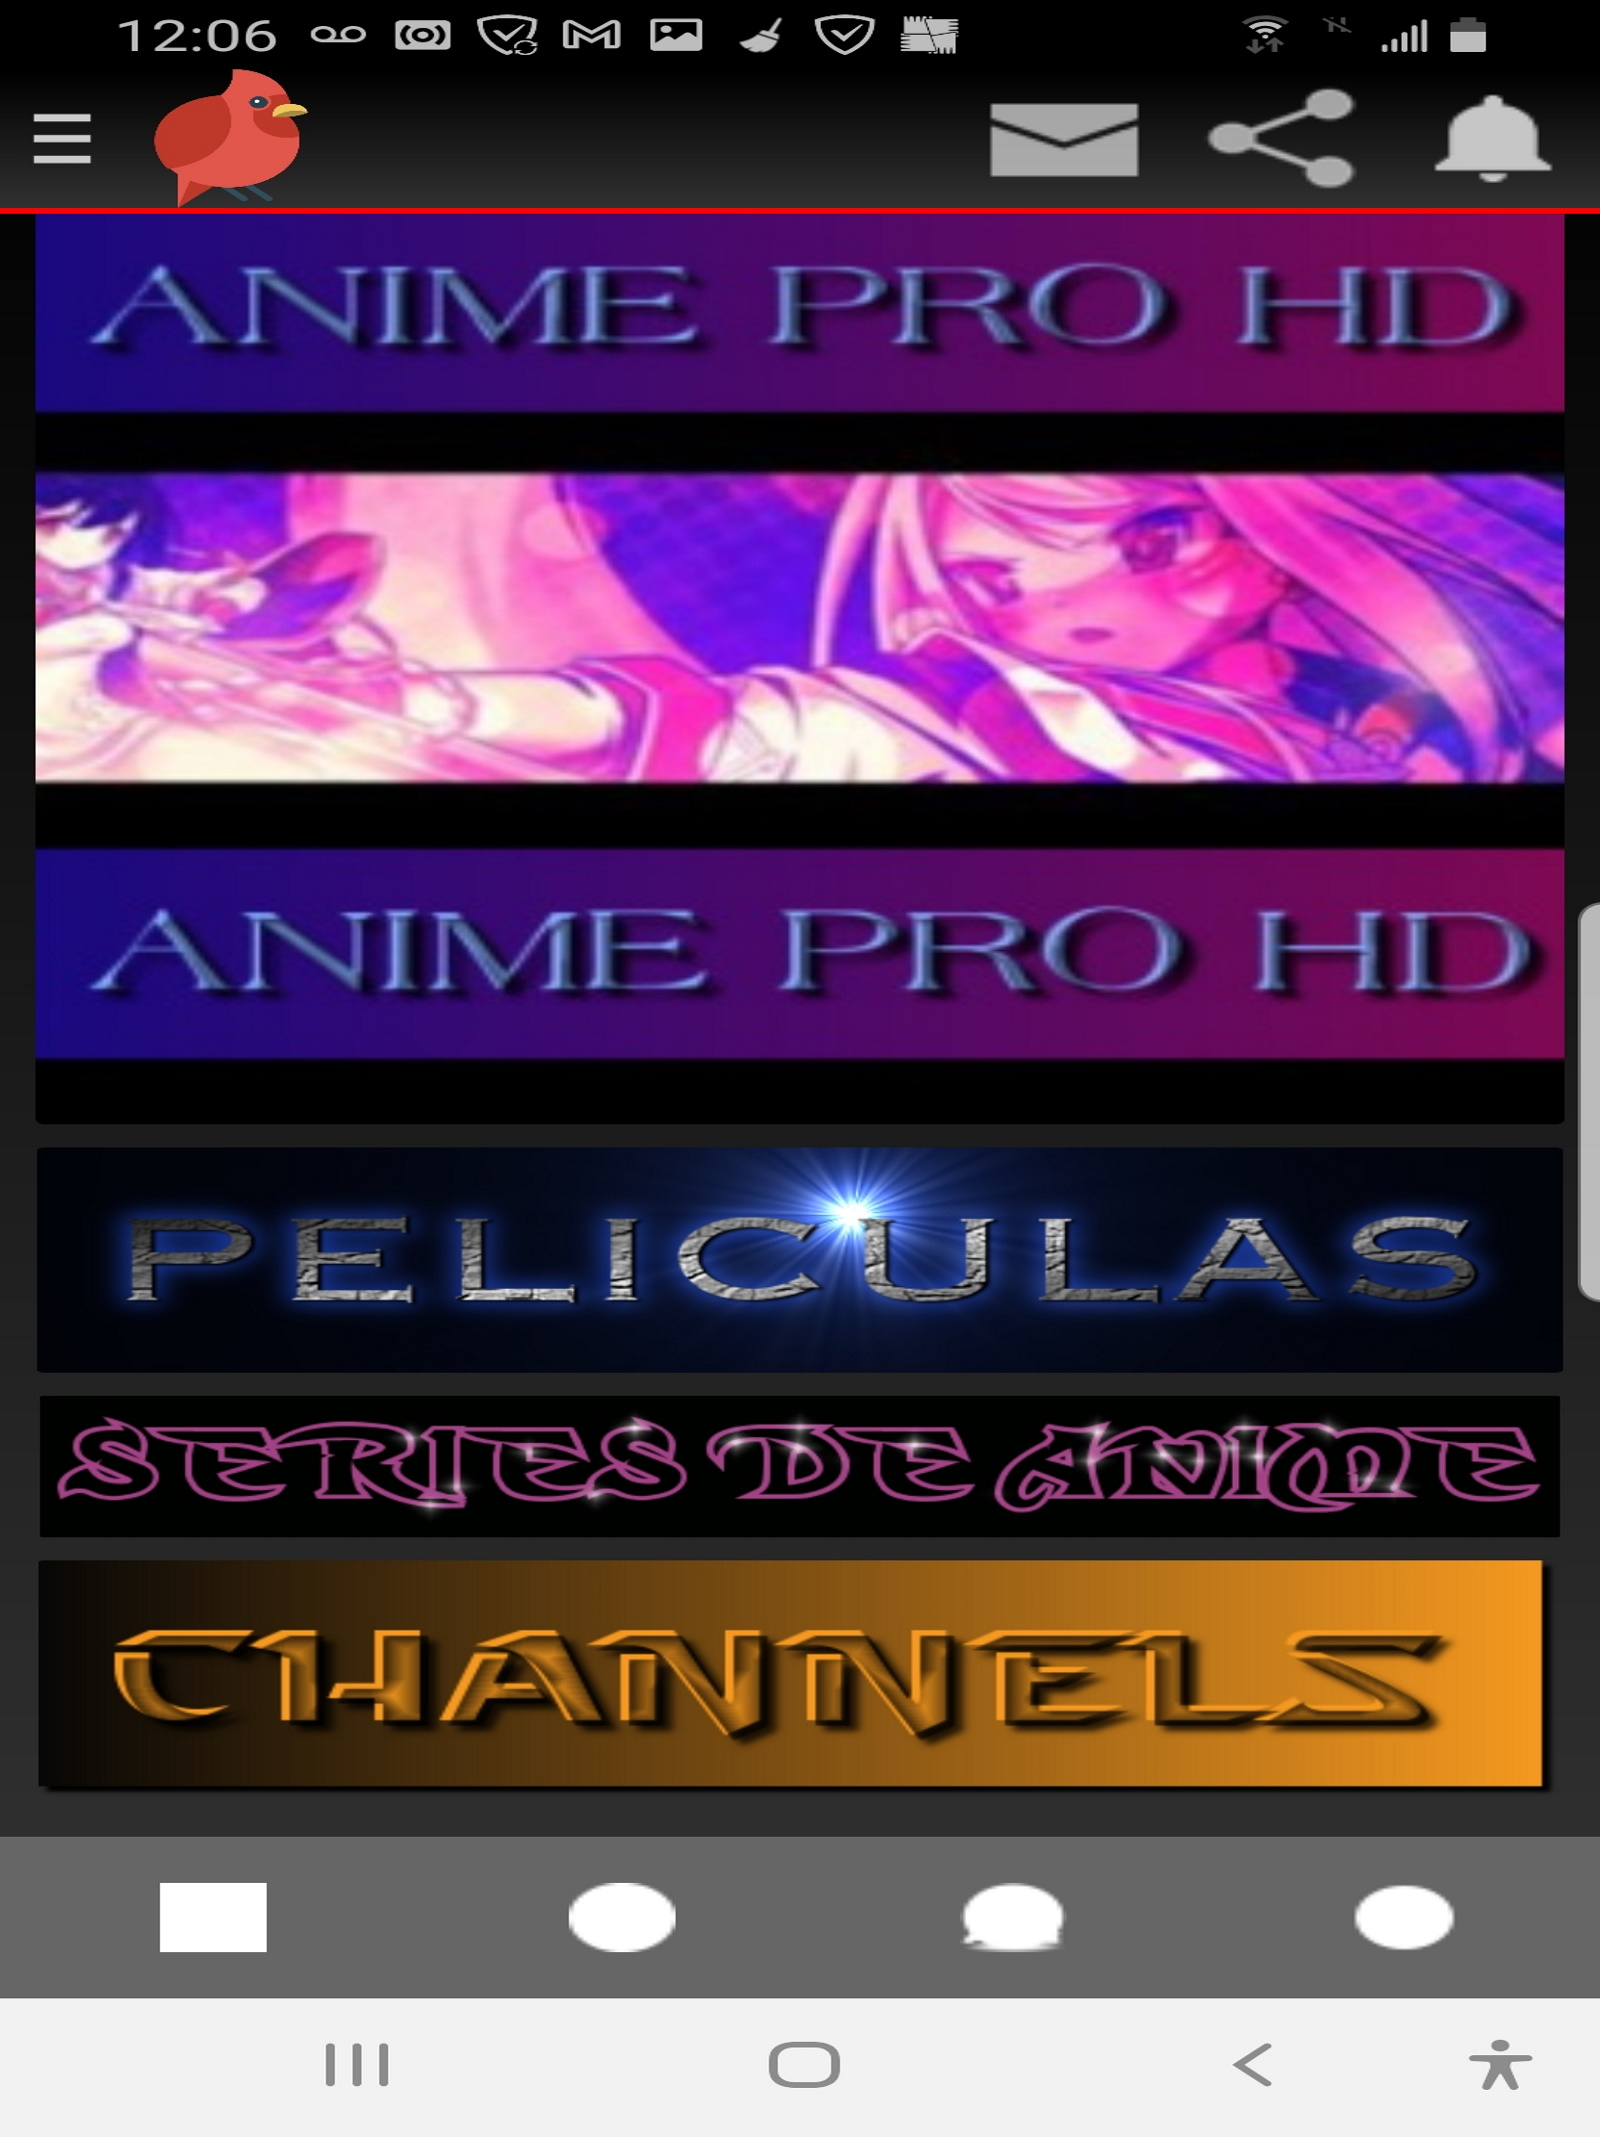 Anime Pro Hd